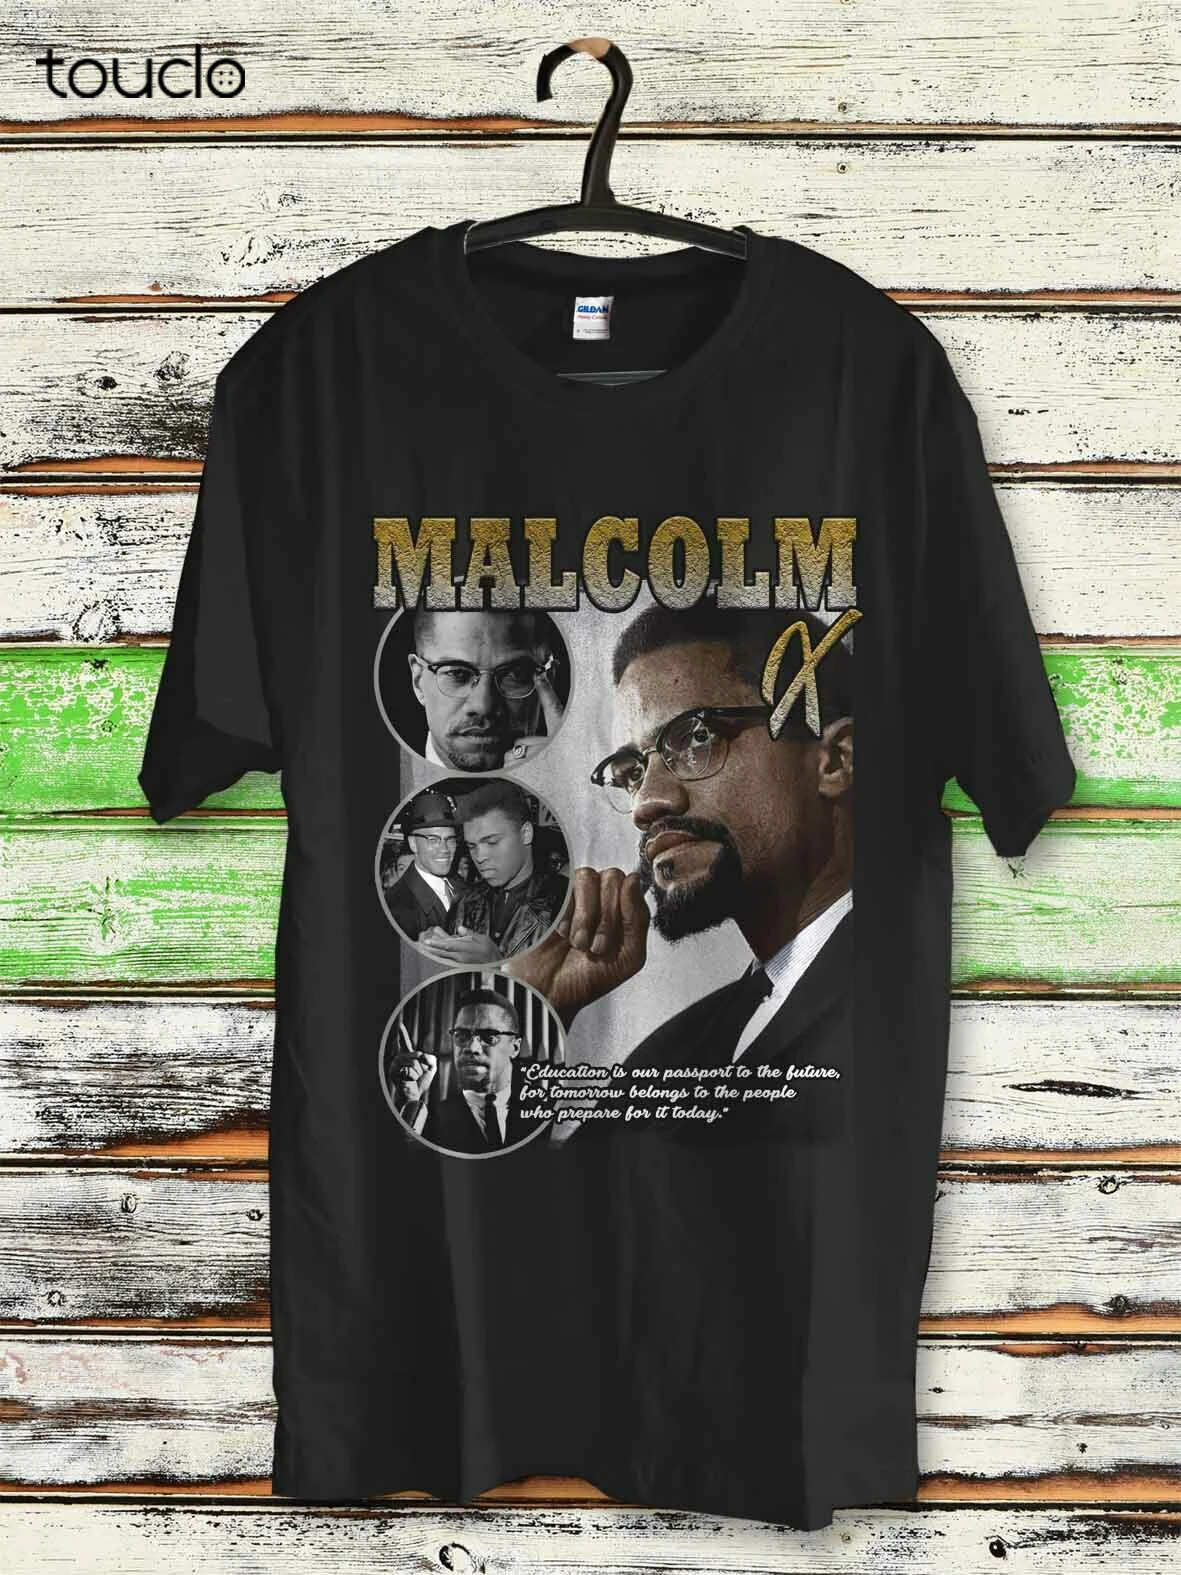 

Черная история MalcolmX футболка с Али, Африканский активист за гражданские права, унисекс, Винтаж